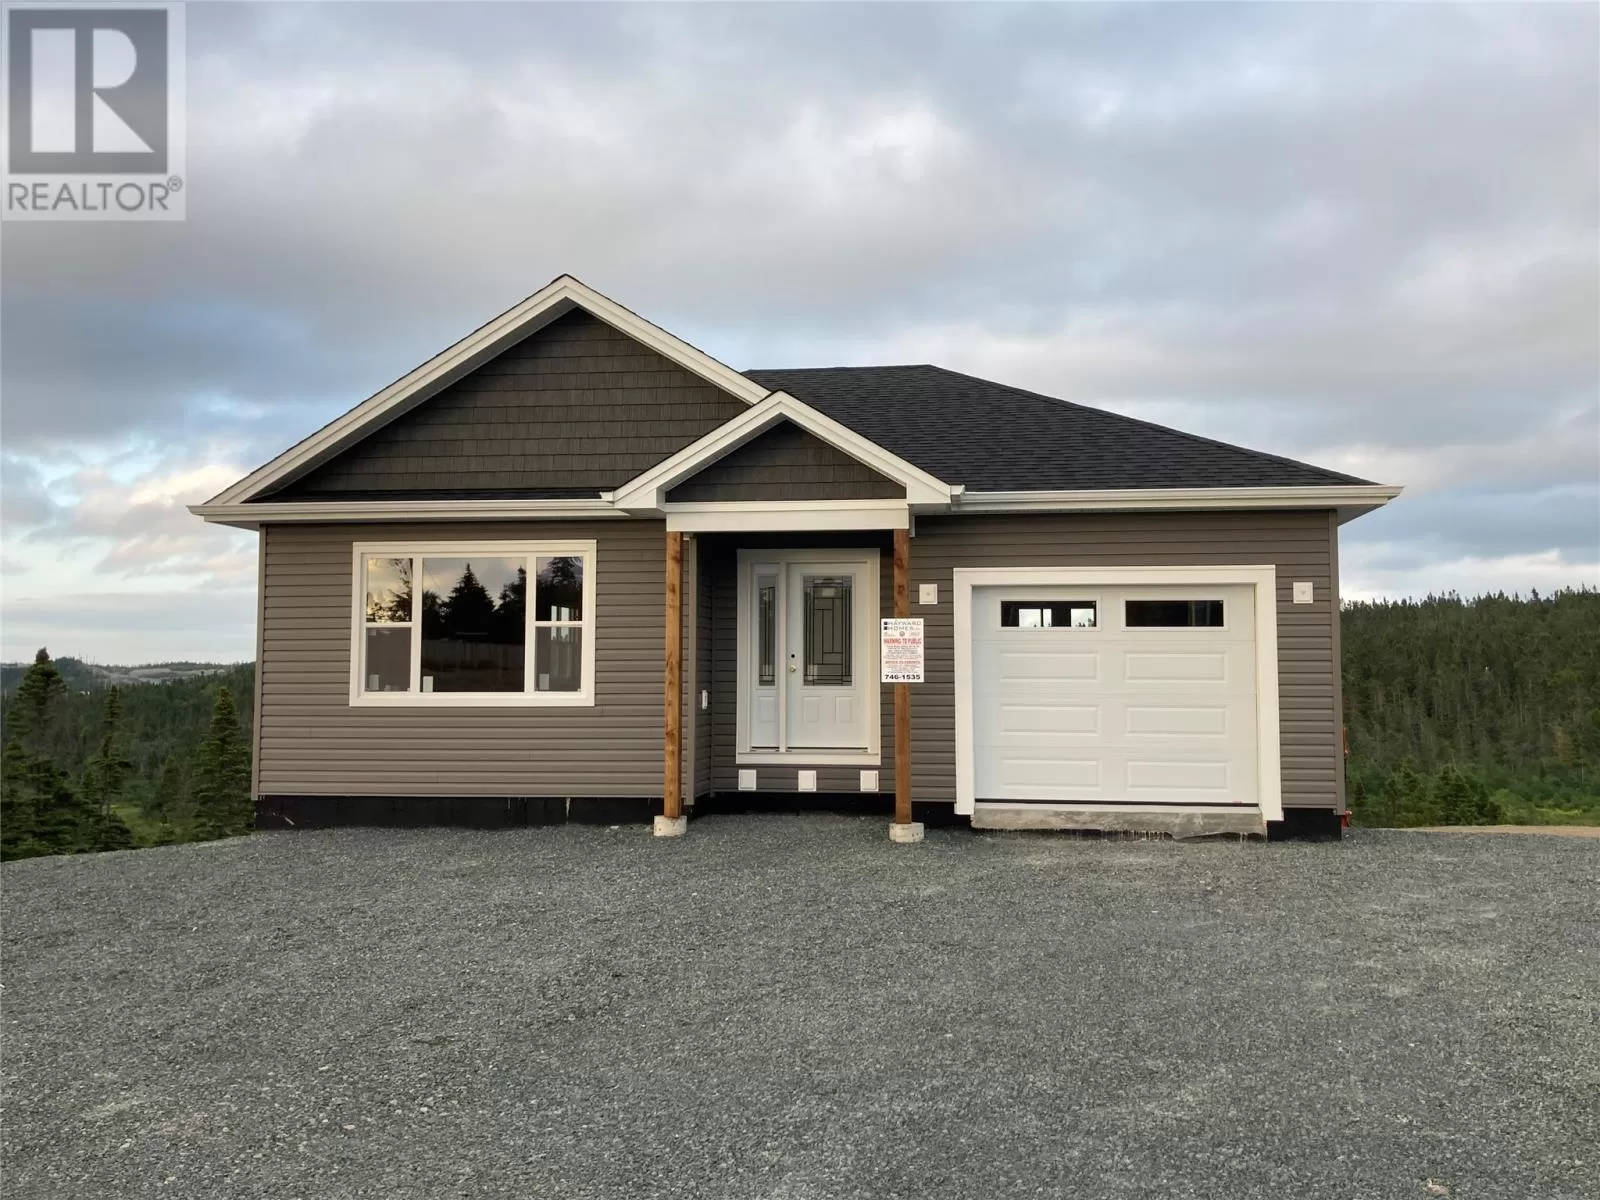 House for rent: 21 Nextor Place, C.B.S., Newfoundland & Labrador A1X 0M3